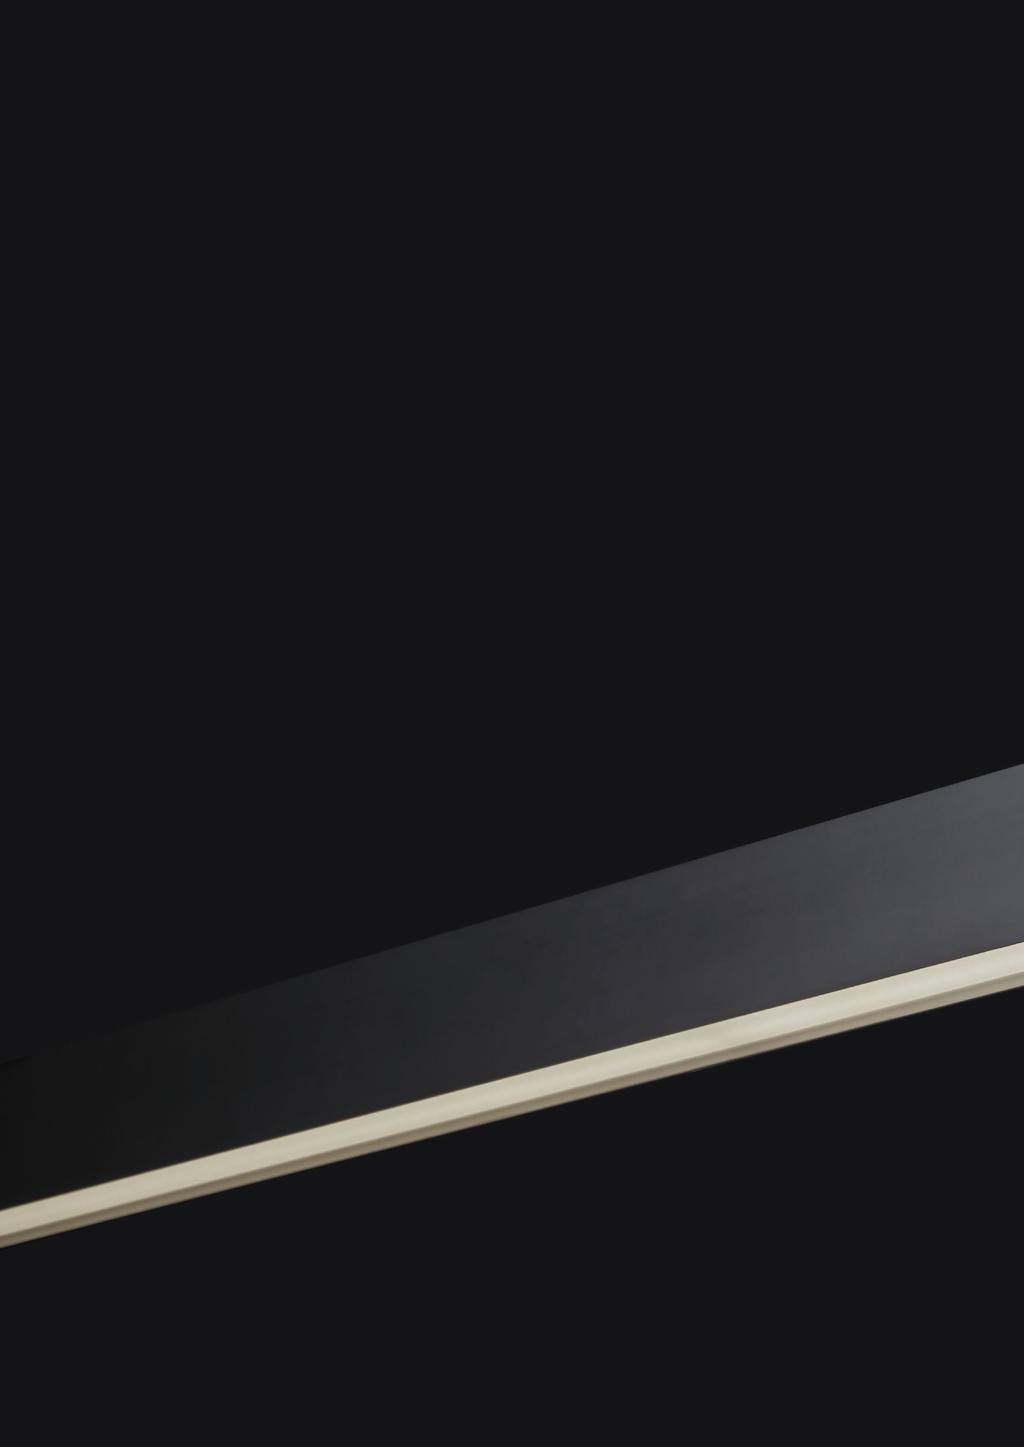 U45 Design: Eduardo Souto de Moura U45 é uma luminária versátil e fiável com a elegância própria de um produto assinado. A U45 é um perfil esguio e simples de proporções puras e escala perfeita.